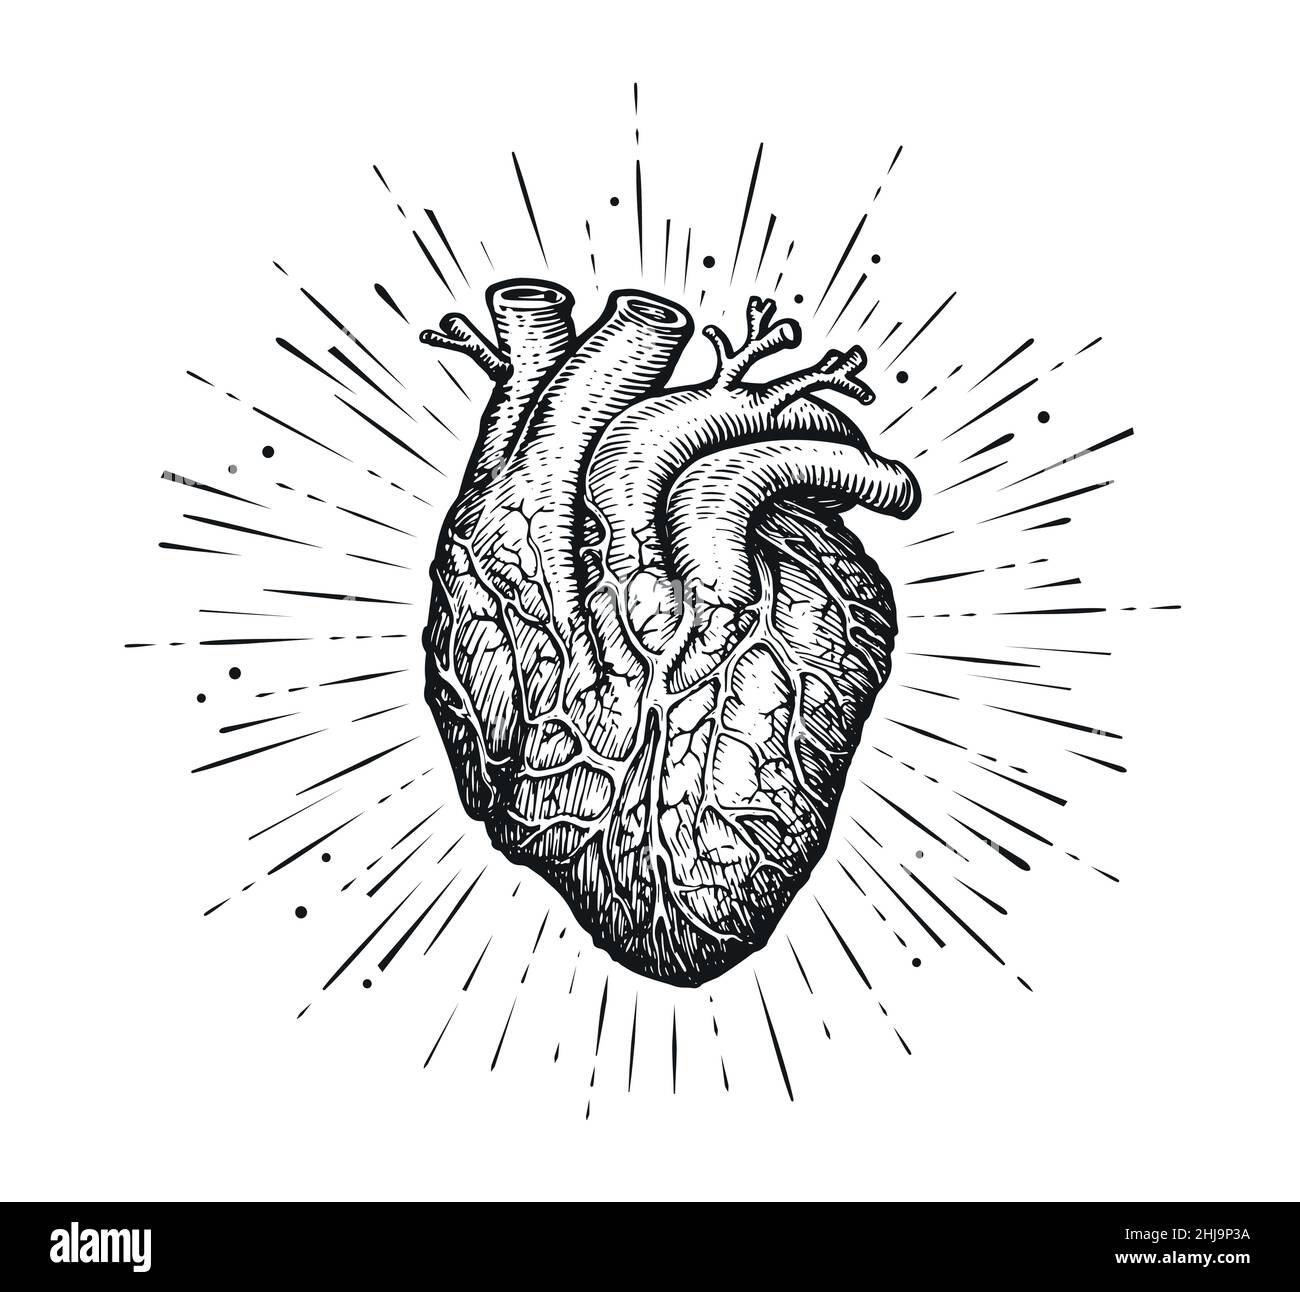 Le cœur et les rayons humains anatomiques.Dessin dessiné à la main dans un style de gravure vintage.Illustration vectorielle Illustration de Vecteur